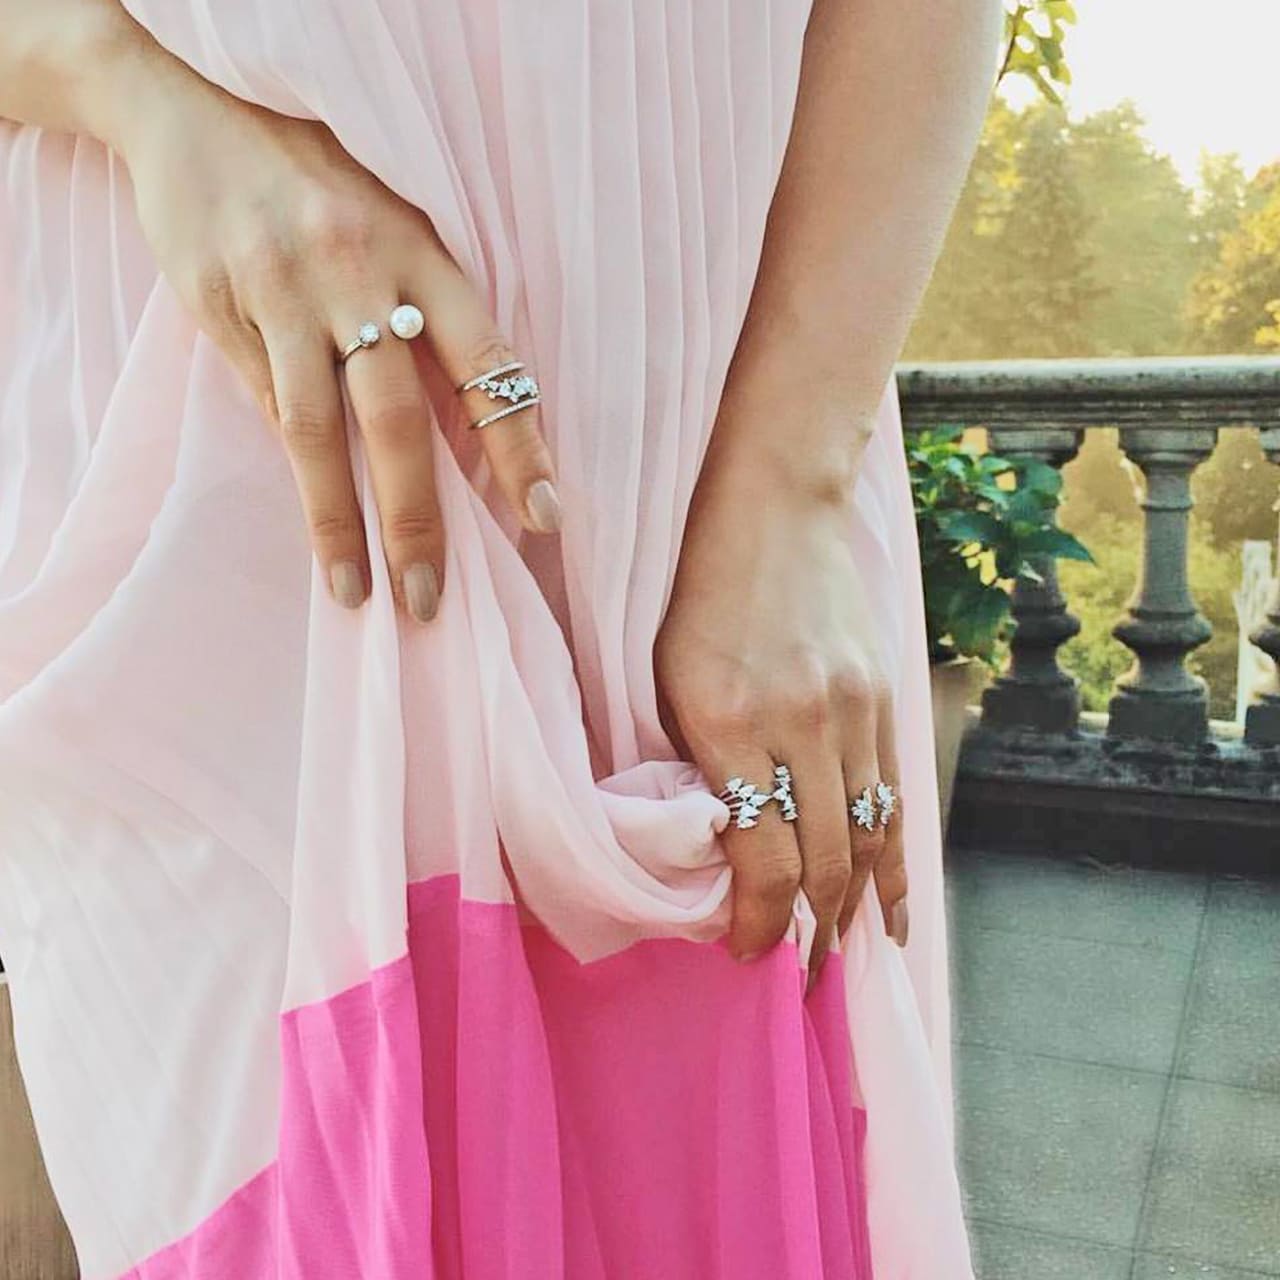  Perlenring aus Silber mit weisser Perle und Zirkonia  zu rosa pinkem Kleid getragen in Bern